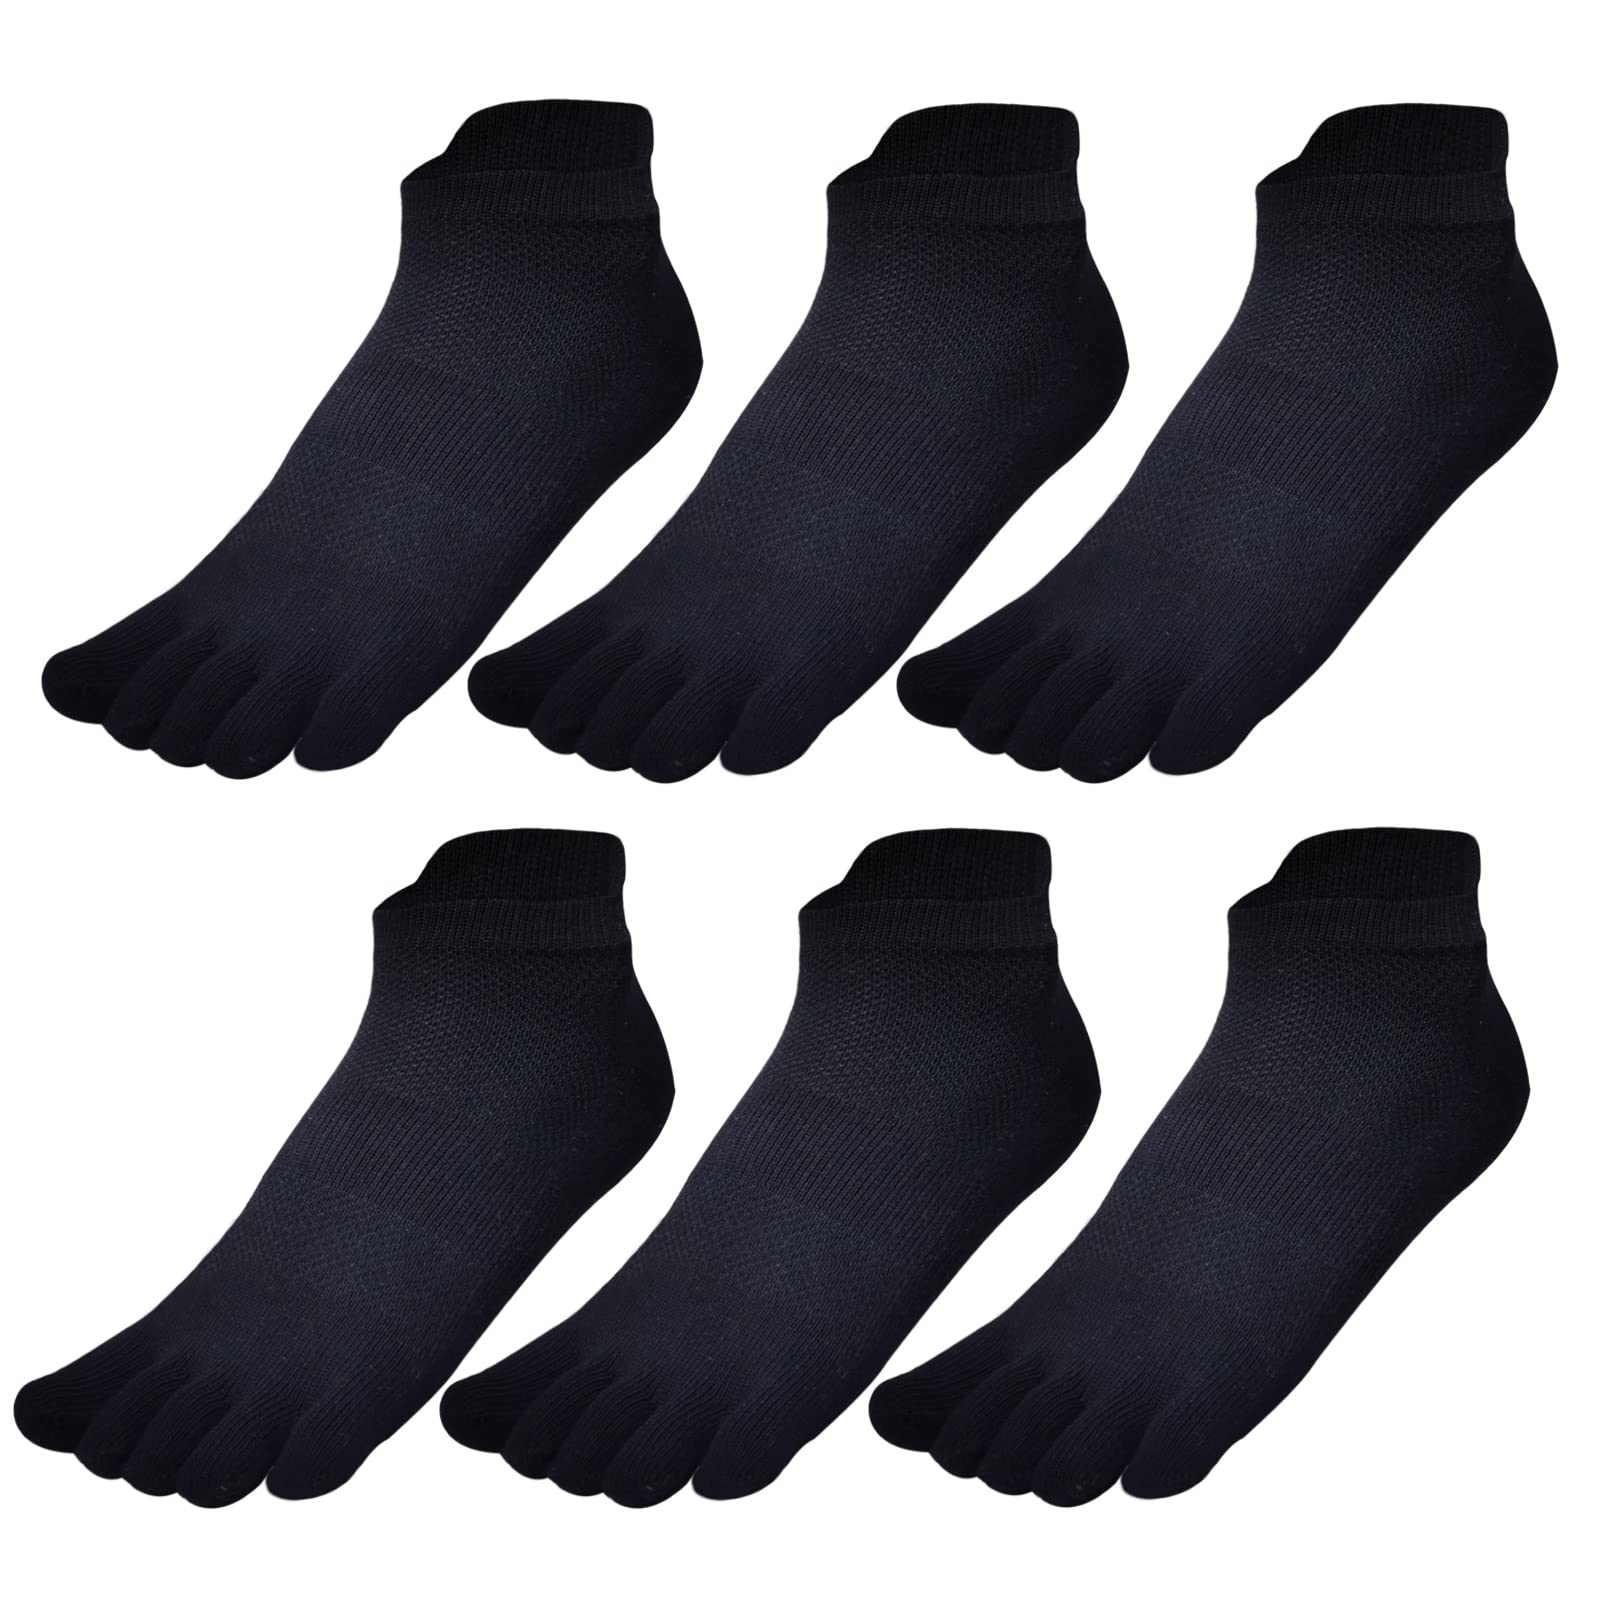 GINZIN Men's Cotton Toe Socks Five Finger Running Socks ports Socks Black Soft Breathable Athletic Trainer Socks